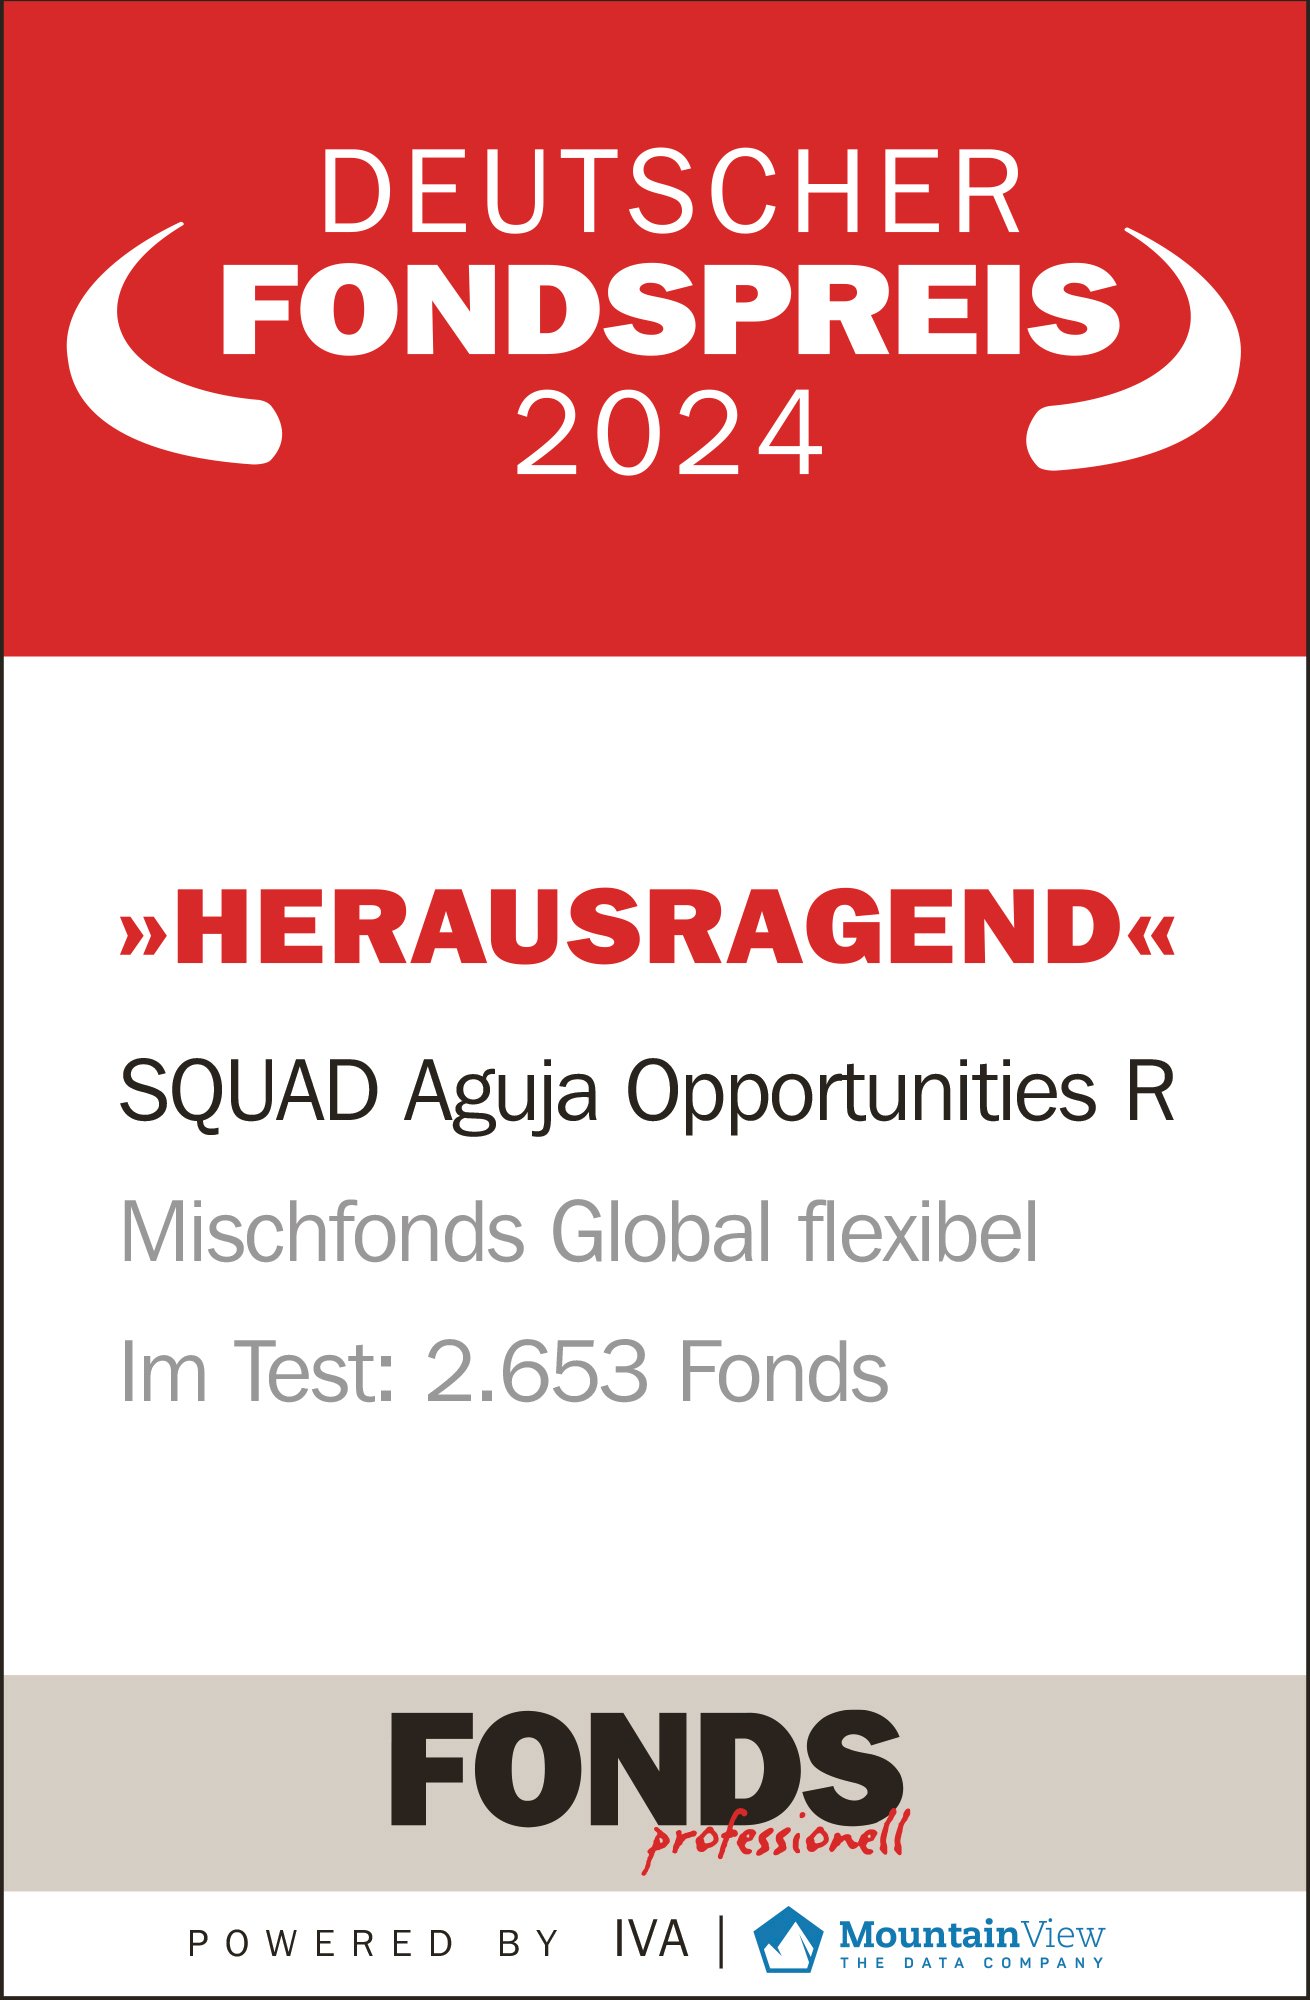 DeutscherFondspreis2024_SQUAD Aguja Opportunities R_Hochformat